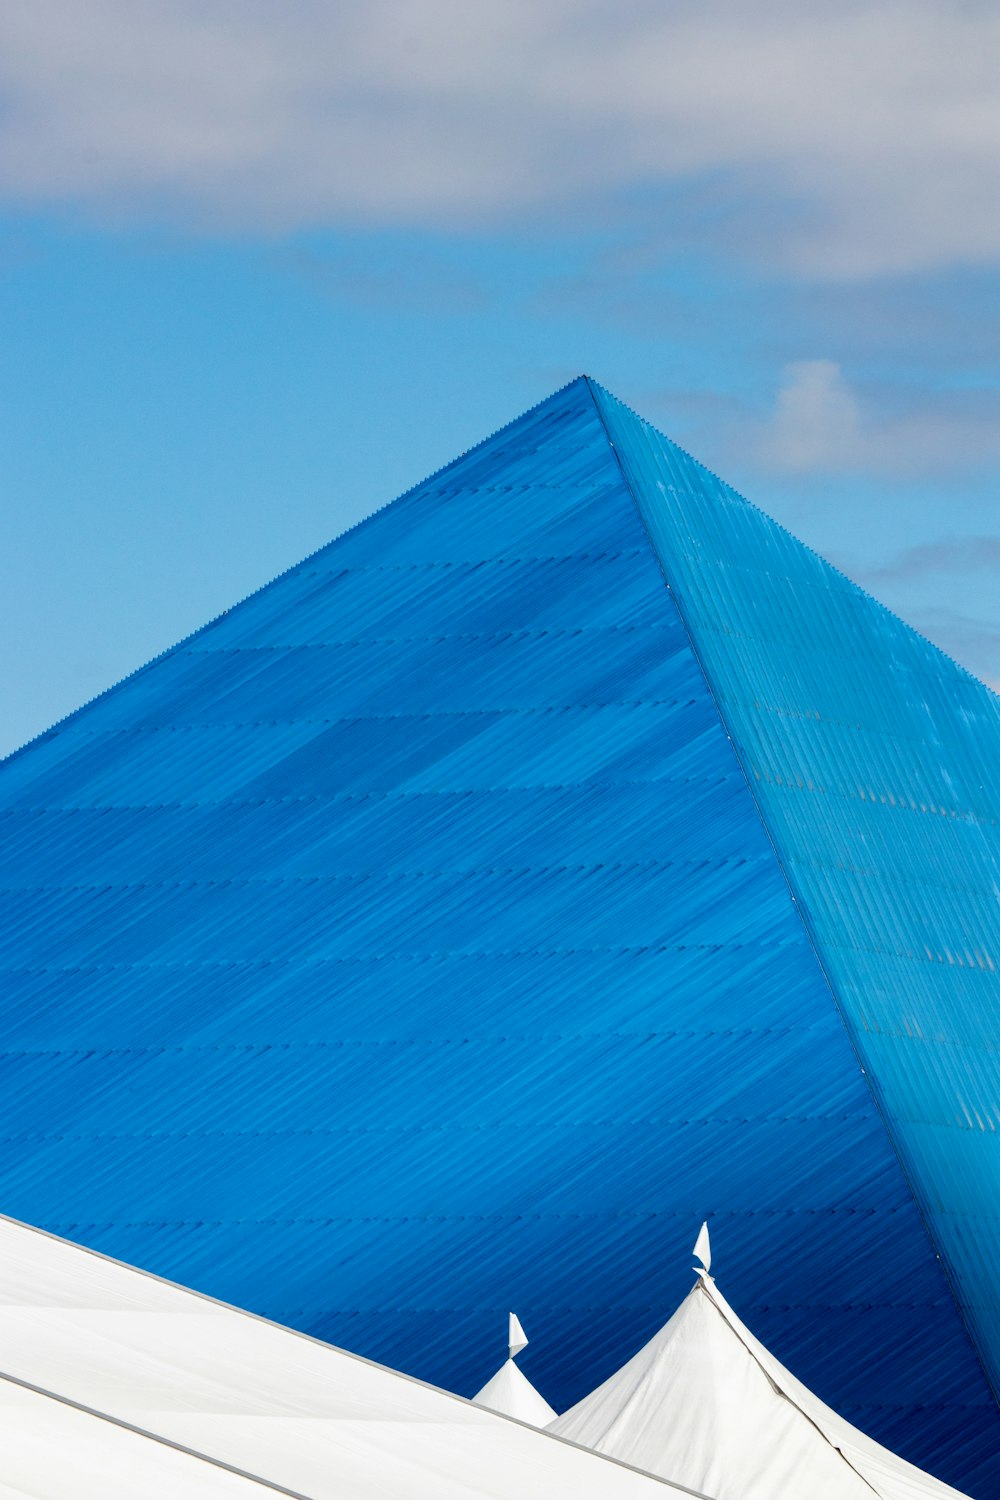 Point de repère de la pyramide bleue